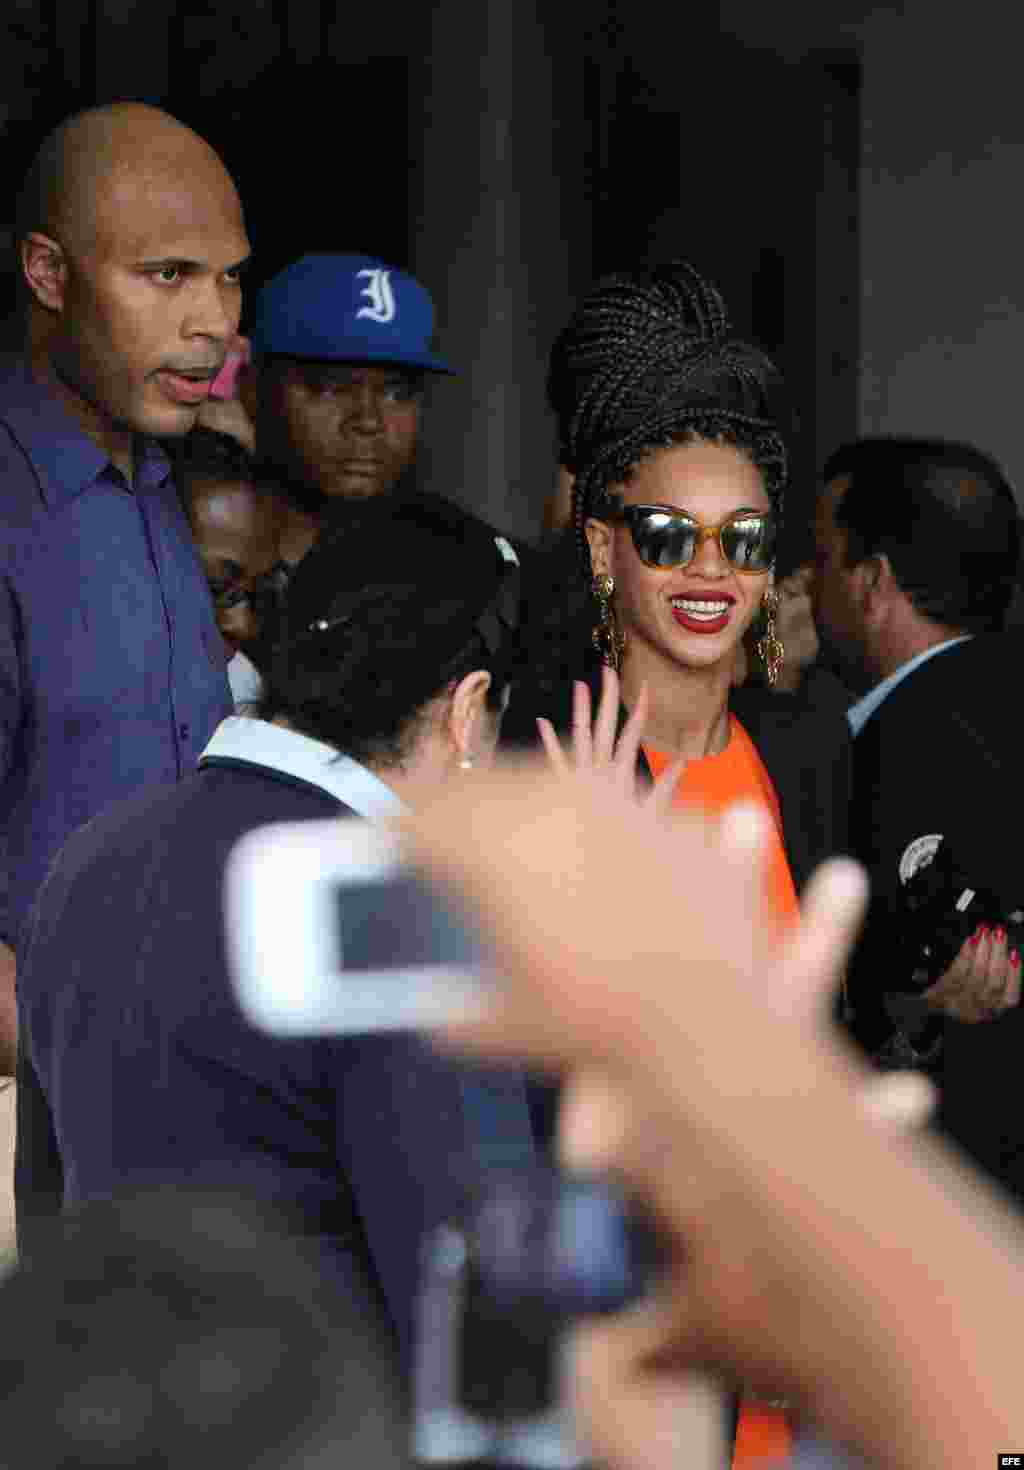 La cantante estadounidense Beyoncé (c) y su esposo, el rapero Jay-Z (i) salen hoy, jueves 4 de abril de 2013, del Hotel Saratoga en La Habana (Cuba), donde se hospedan junto a varios miembros de su familia, para celebrar los cinco años de su matrimonio. E